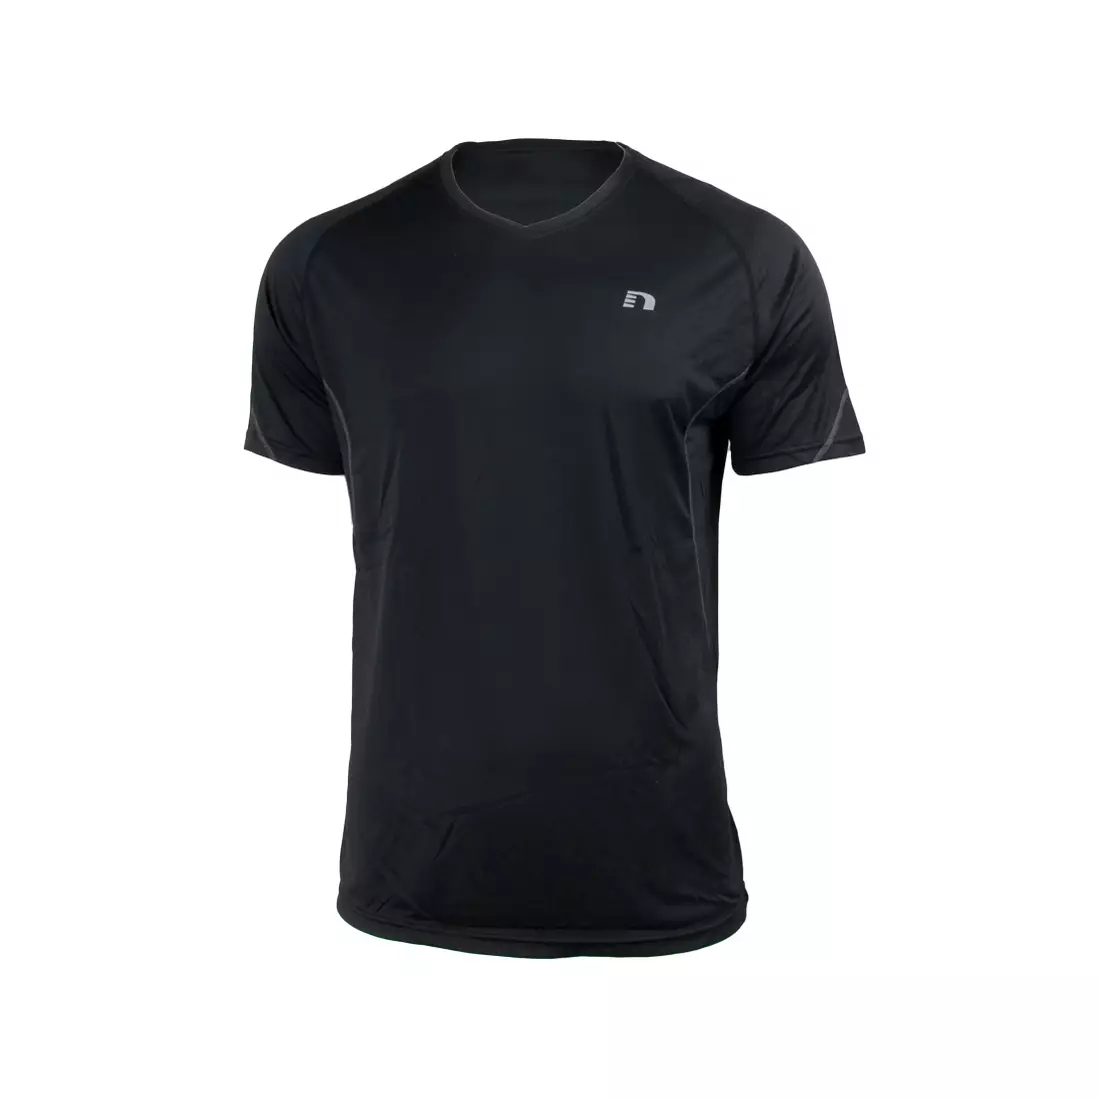 NEWLINE COOLMAX TEE - tricou alergare pentru bărbați 14613-060